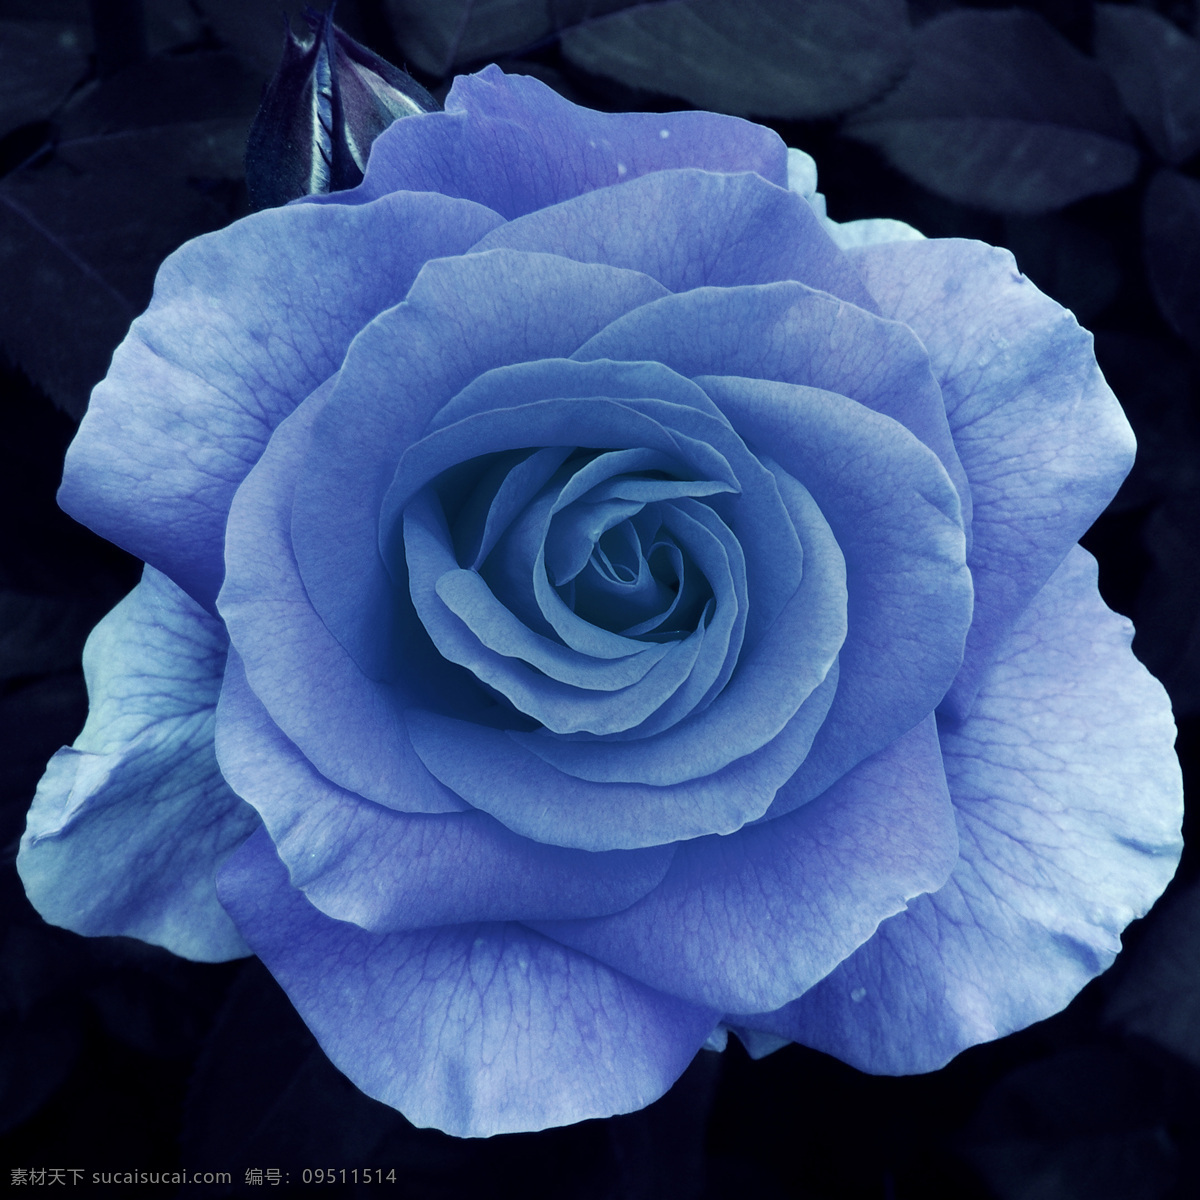 蓝玫瑰 蓝色 玫瑰花 高清晰 特写 玫瑰 生物世界 花草 花和嫩芽 摄影图库 300